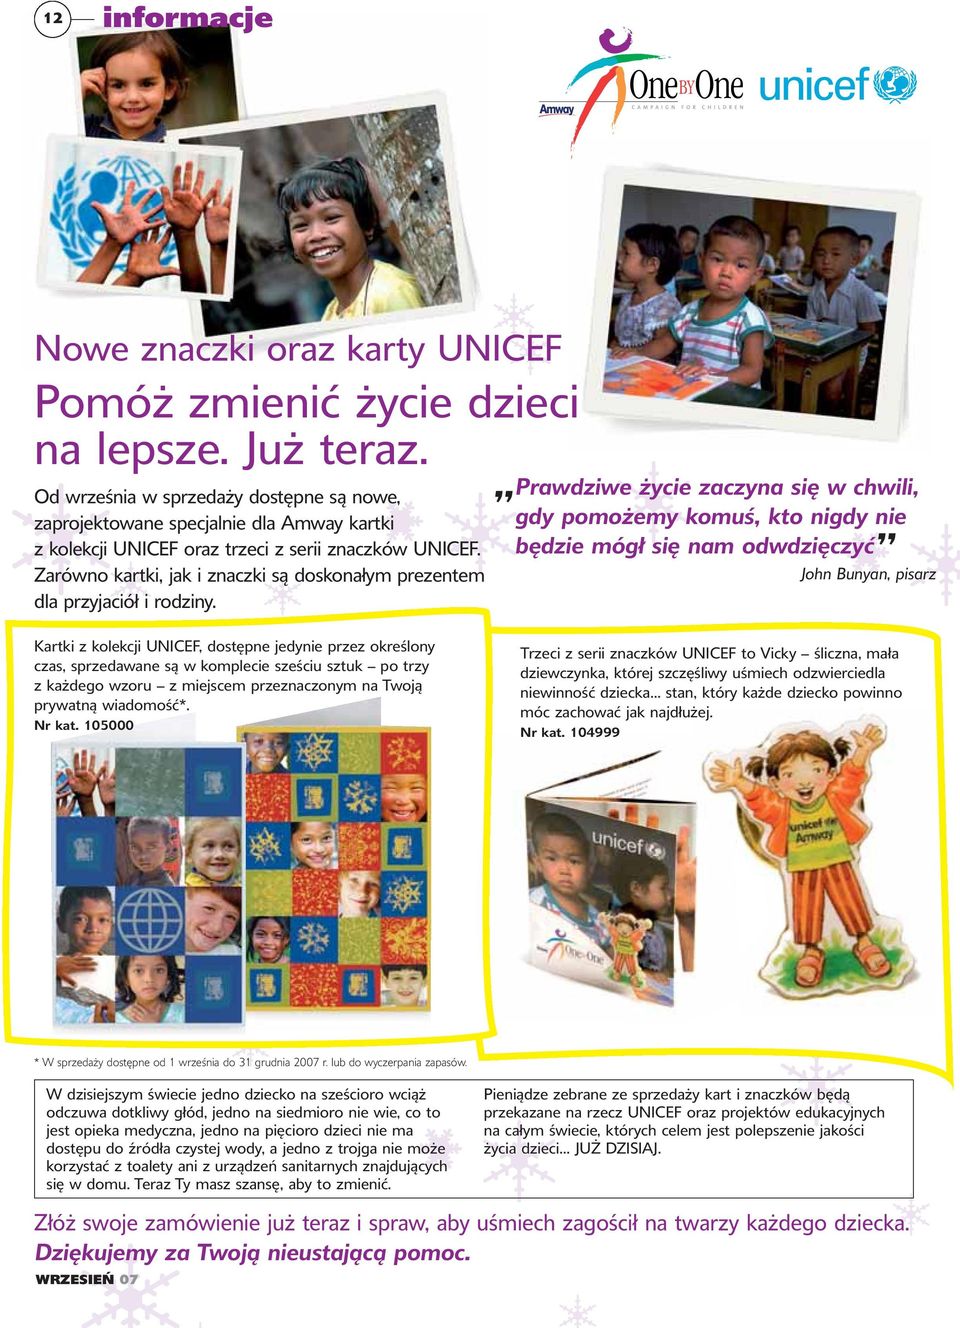 znaczków UNICEF. będzie mógł się nam odwdzięczyć Zarówno kartki, jak i znaczki są doskonałym prezentem John Bunyan, pisarz dla przyjaciół i rodziny.